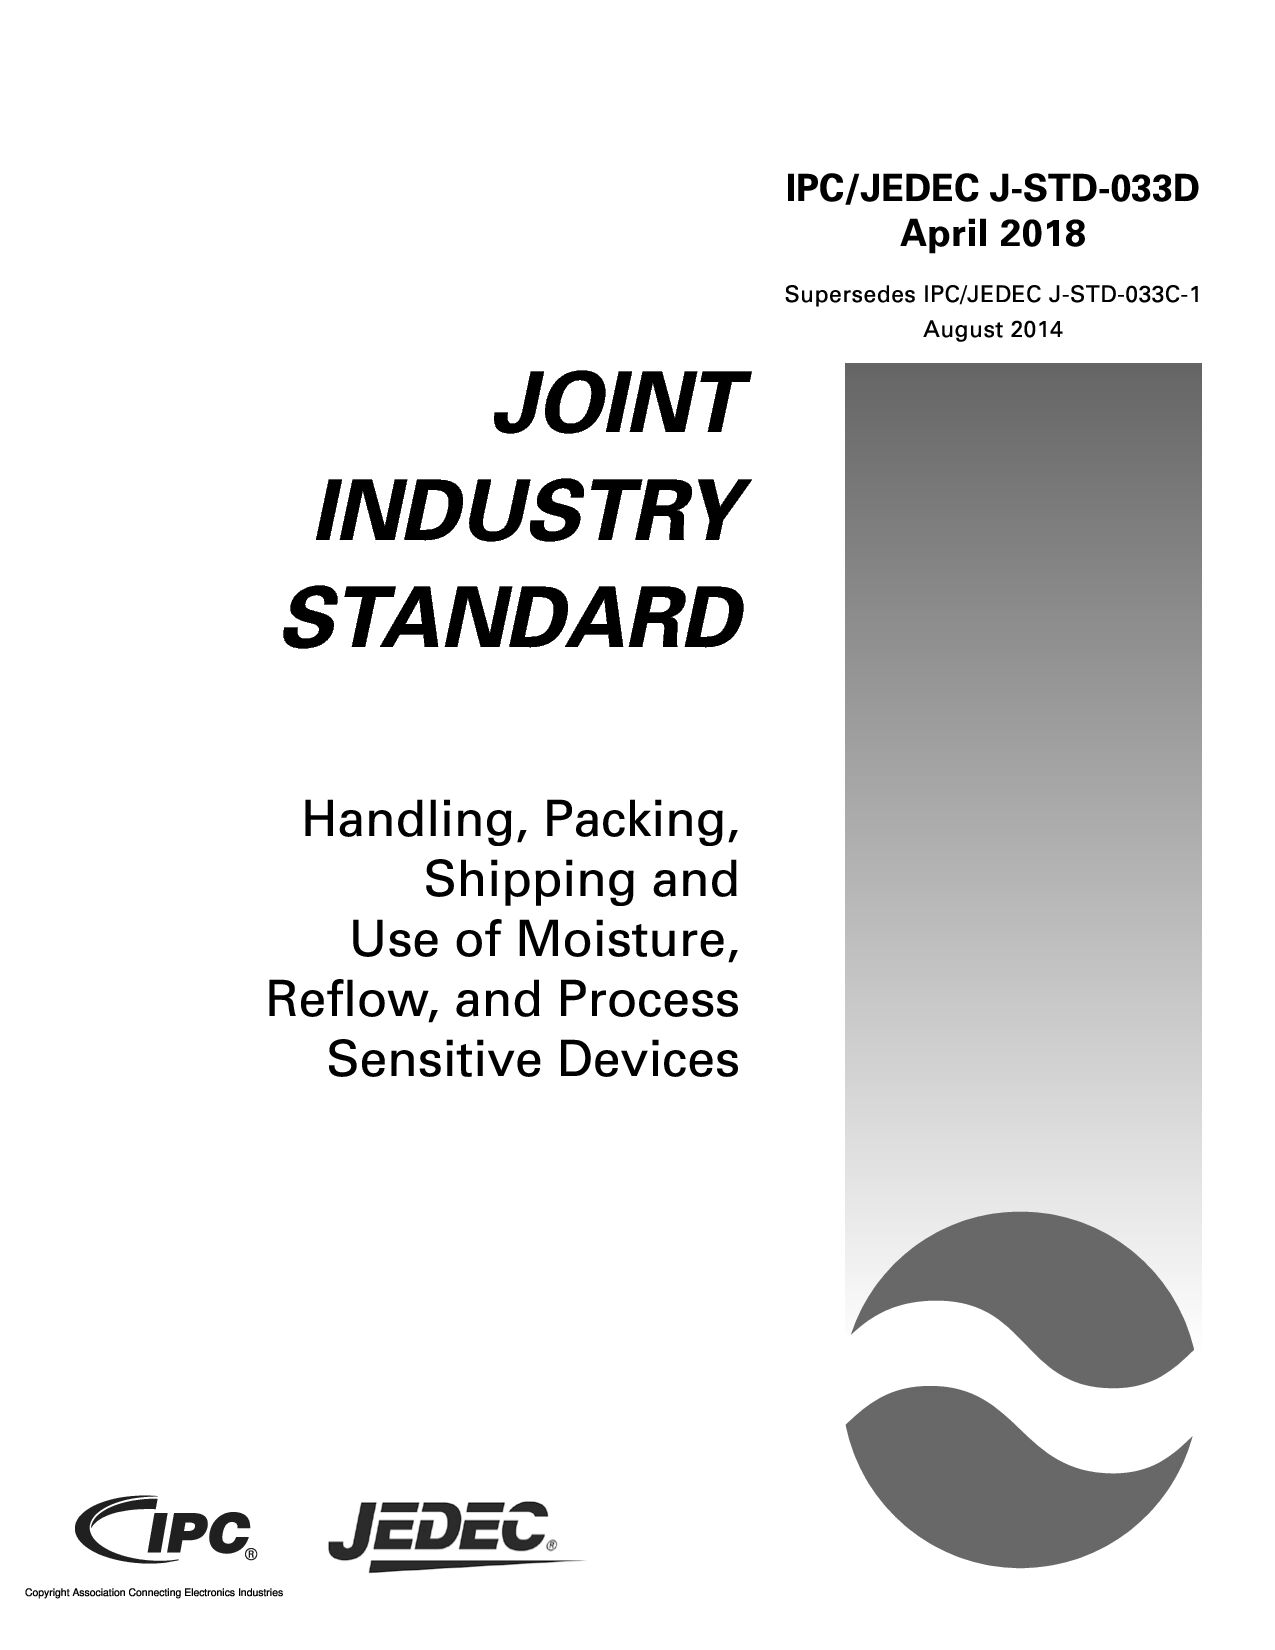 IPC JEDEC J-STD-033D-2018